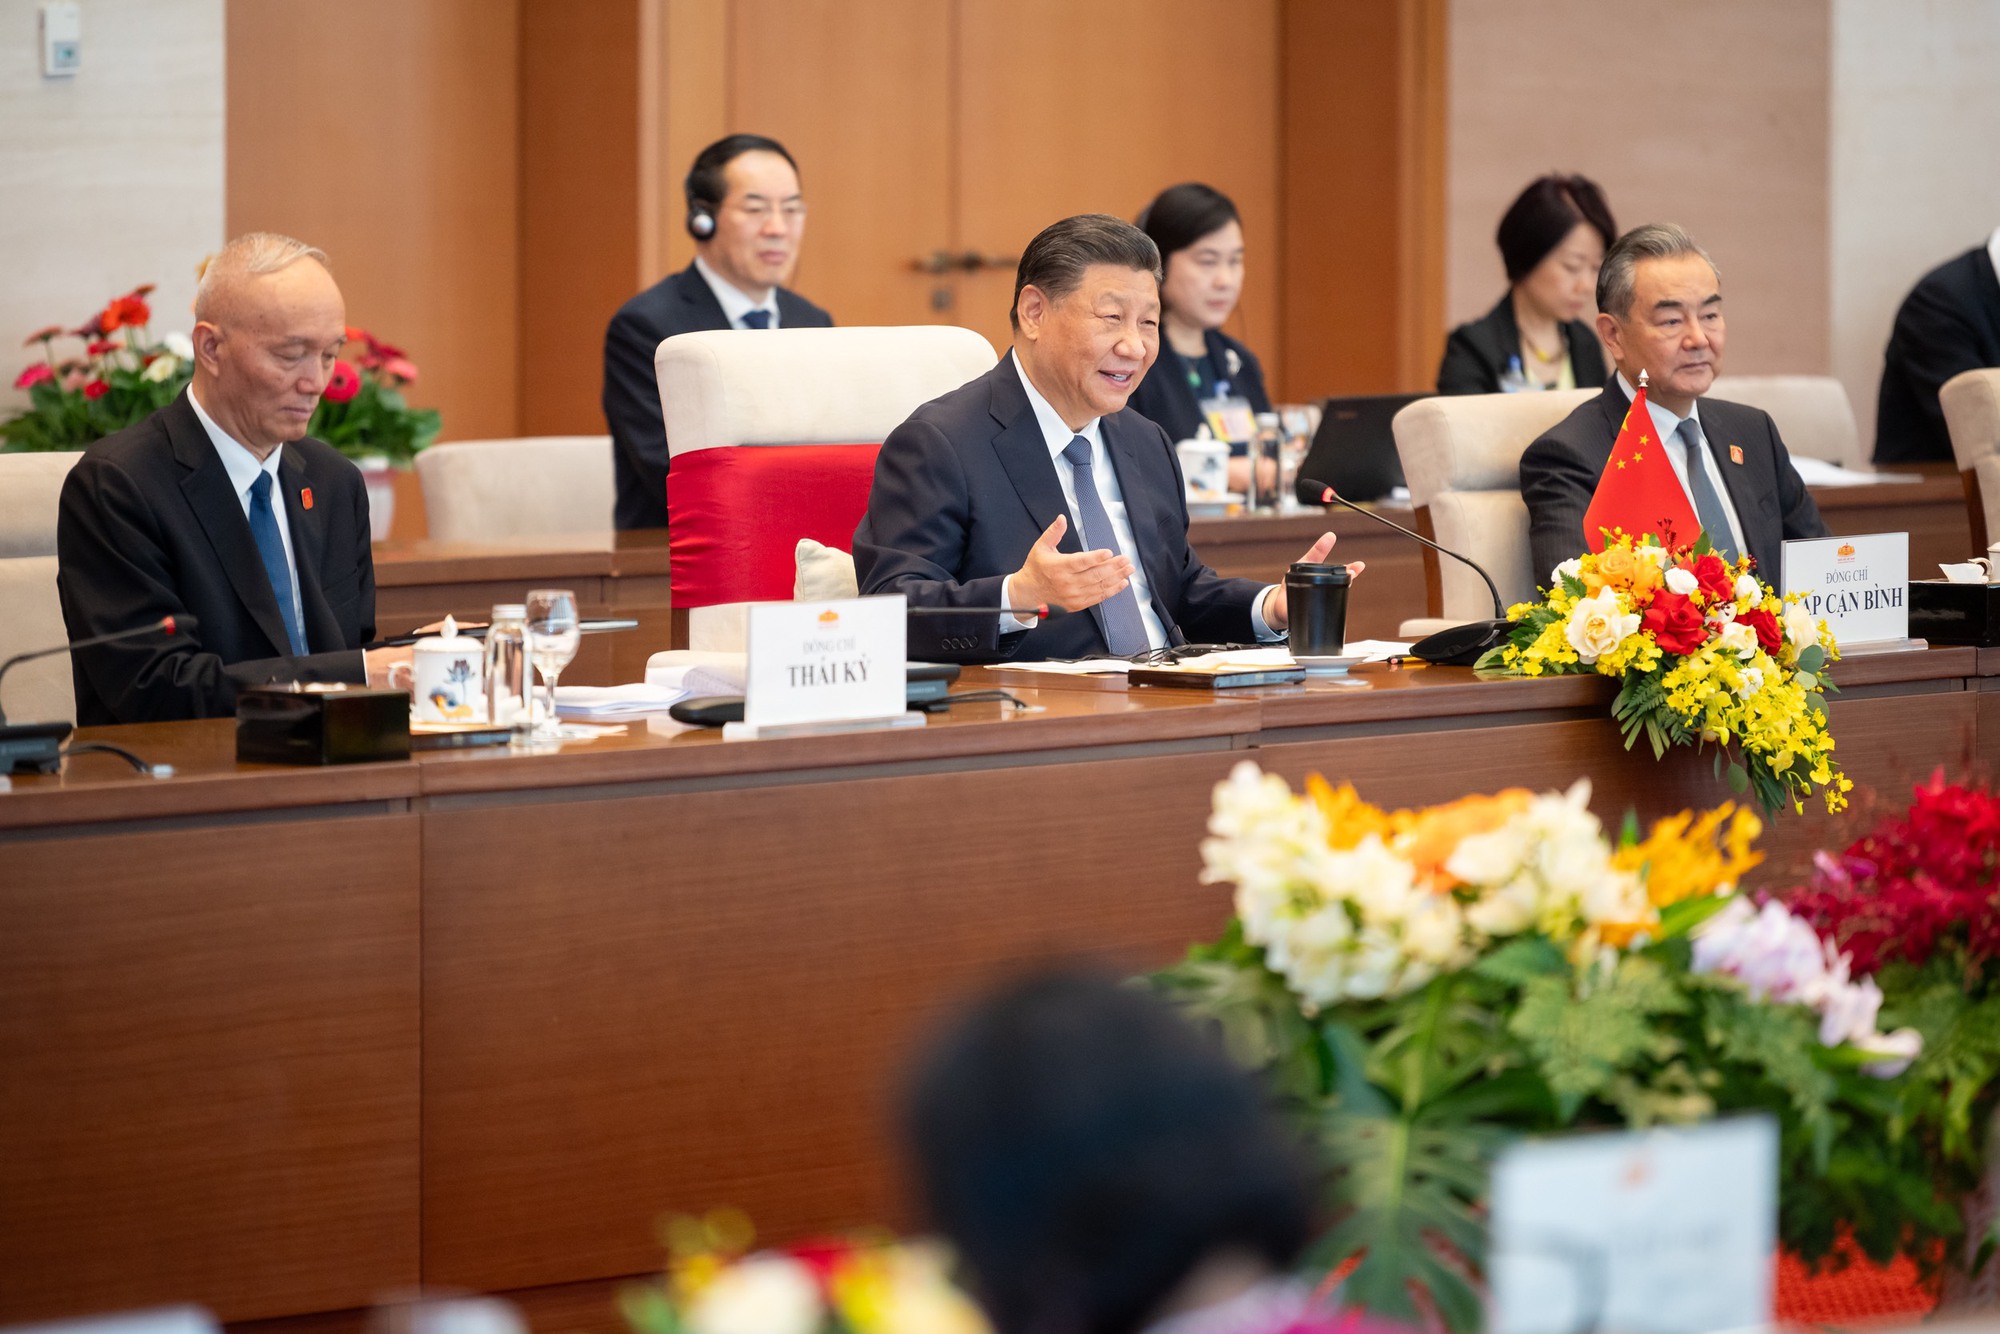 Chủ tịch Quốc hội Vương Đình Huệ hội kiến Tổng Bí thư, Chủ tịch nước Trung Quốc Tập Cận Bình- Ảnh 8.